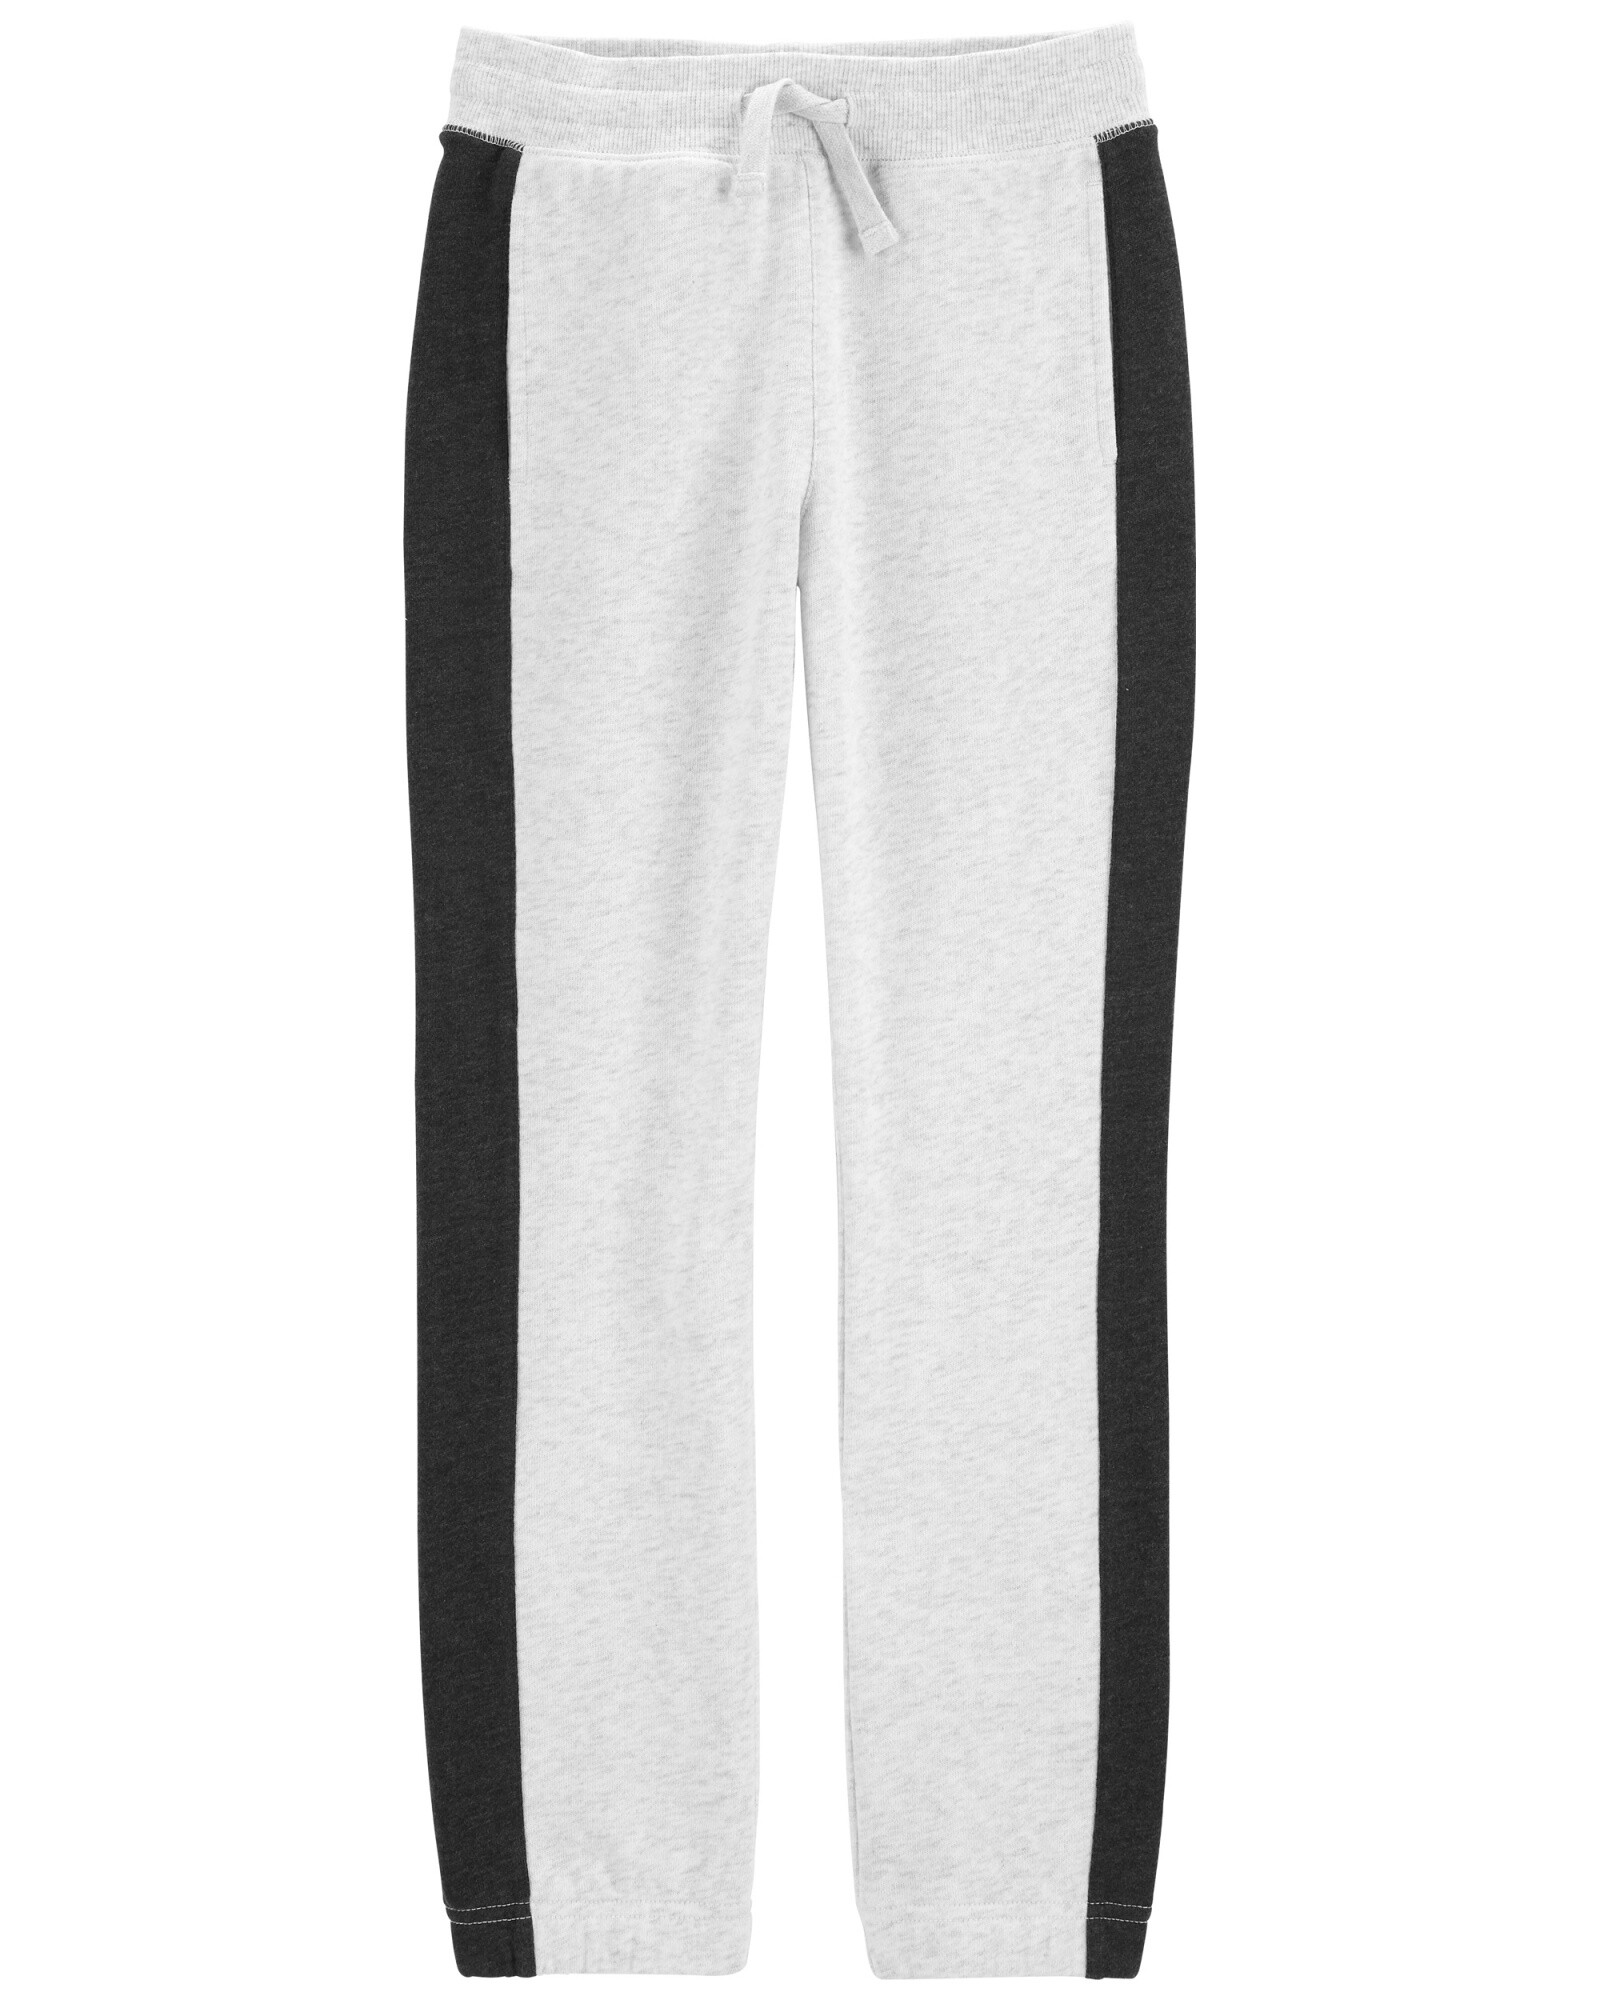 Pantalón deportivo de algodón con logo. Talles 6-14 Sin color